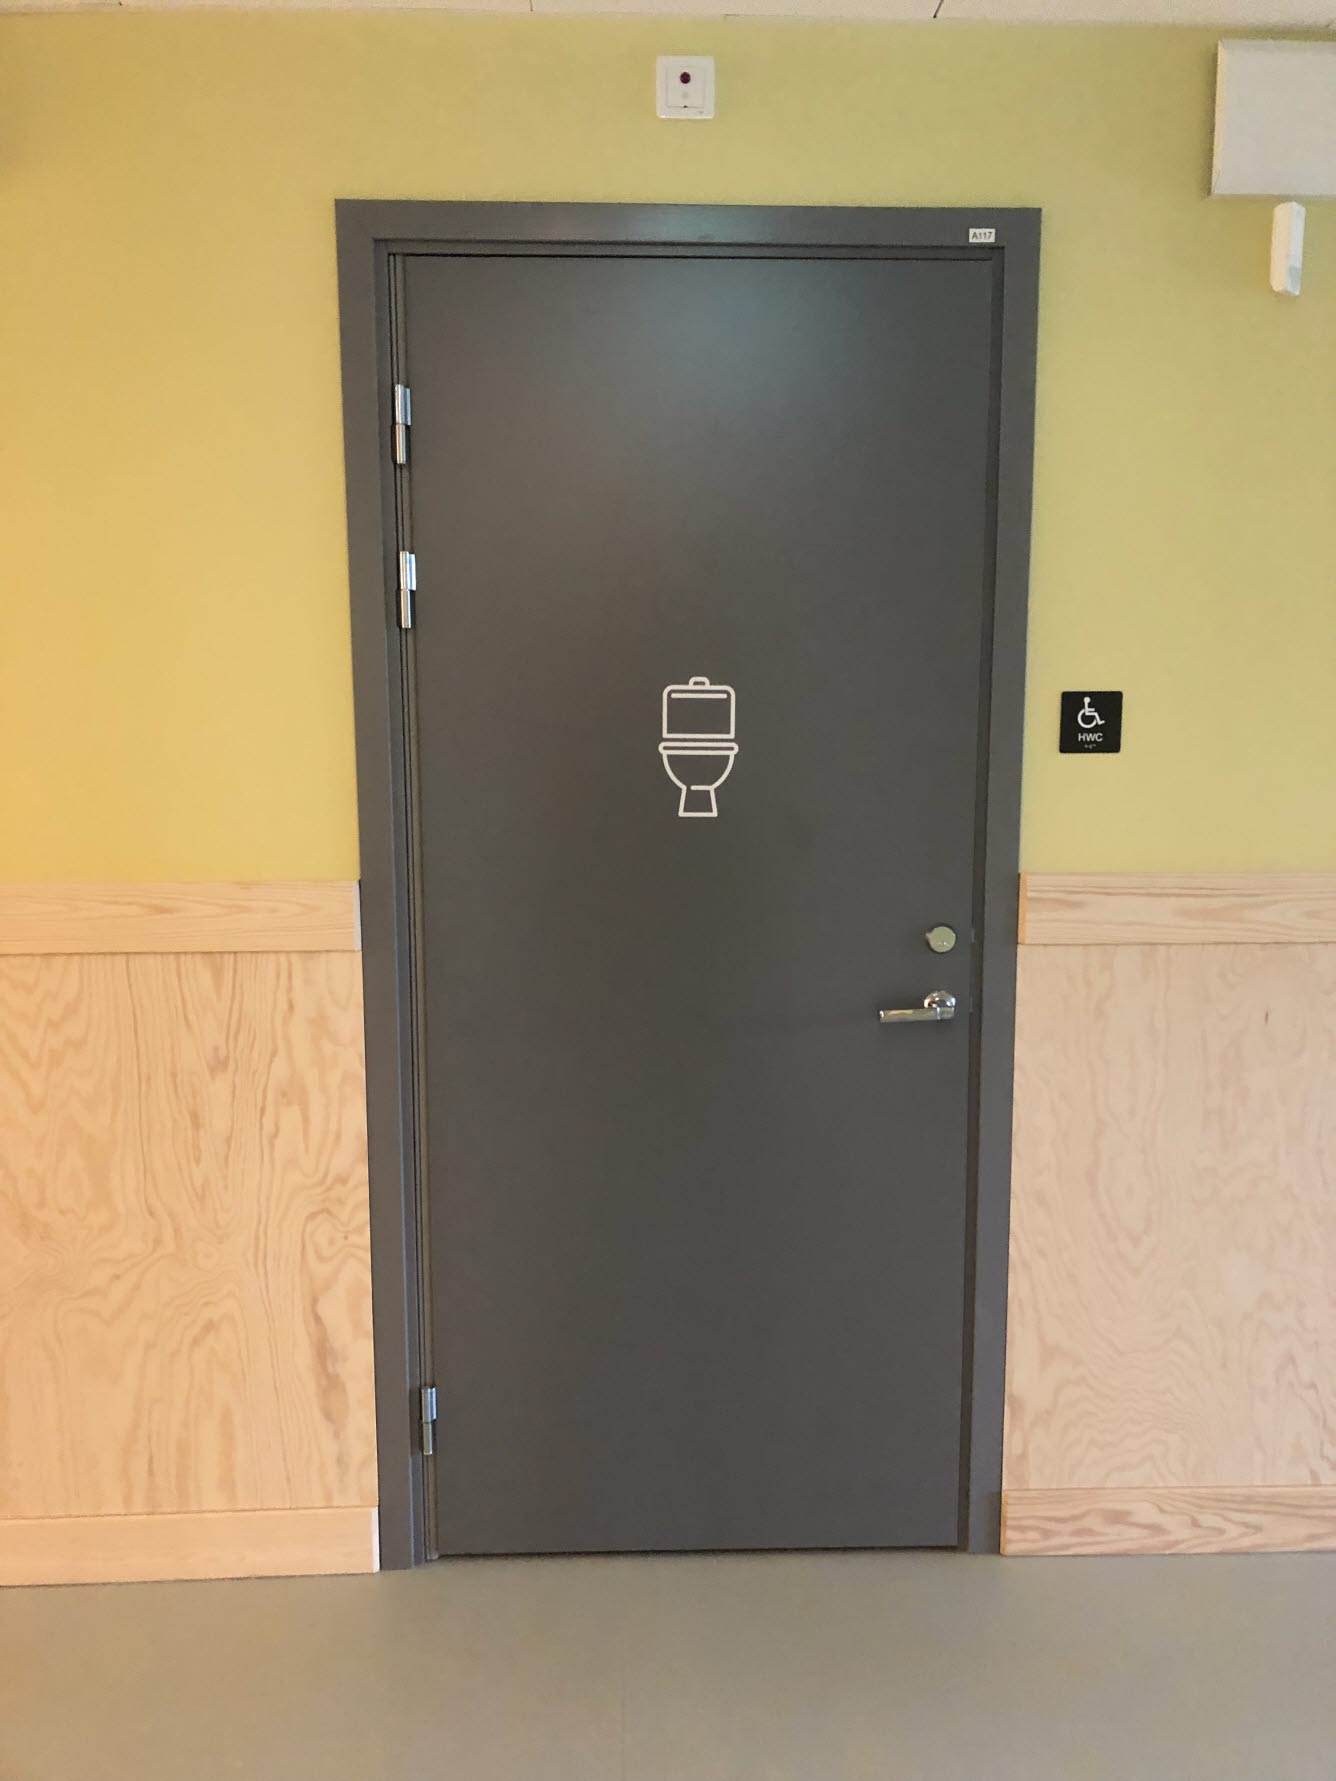 Mörkgrå toalettdörr med en vit toalettstol som symbol på dörren. Väggen är ljusgrön med en träfärgad bröstpanel.